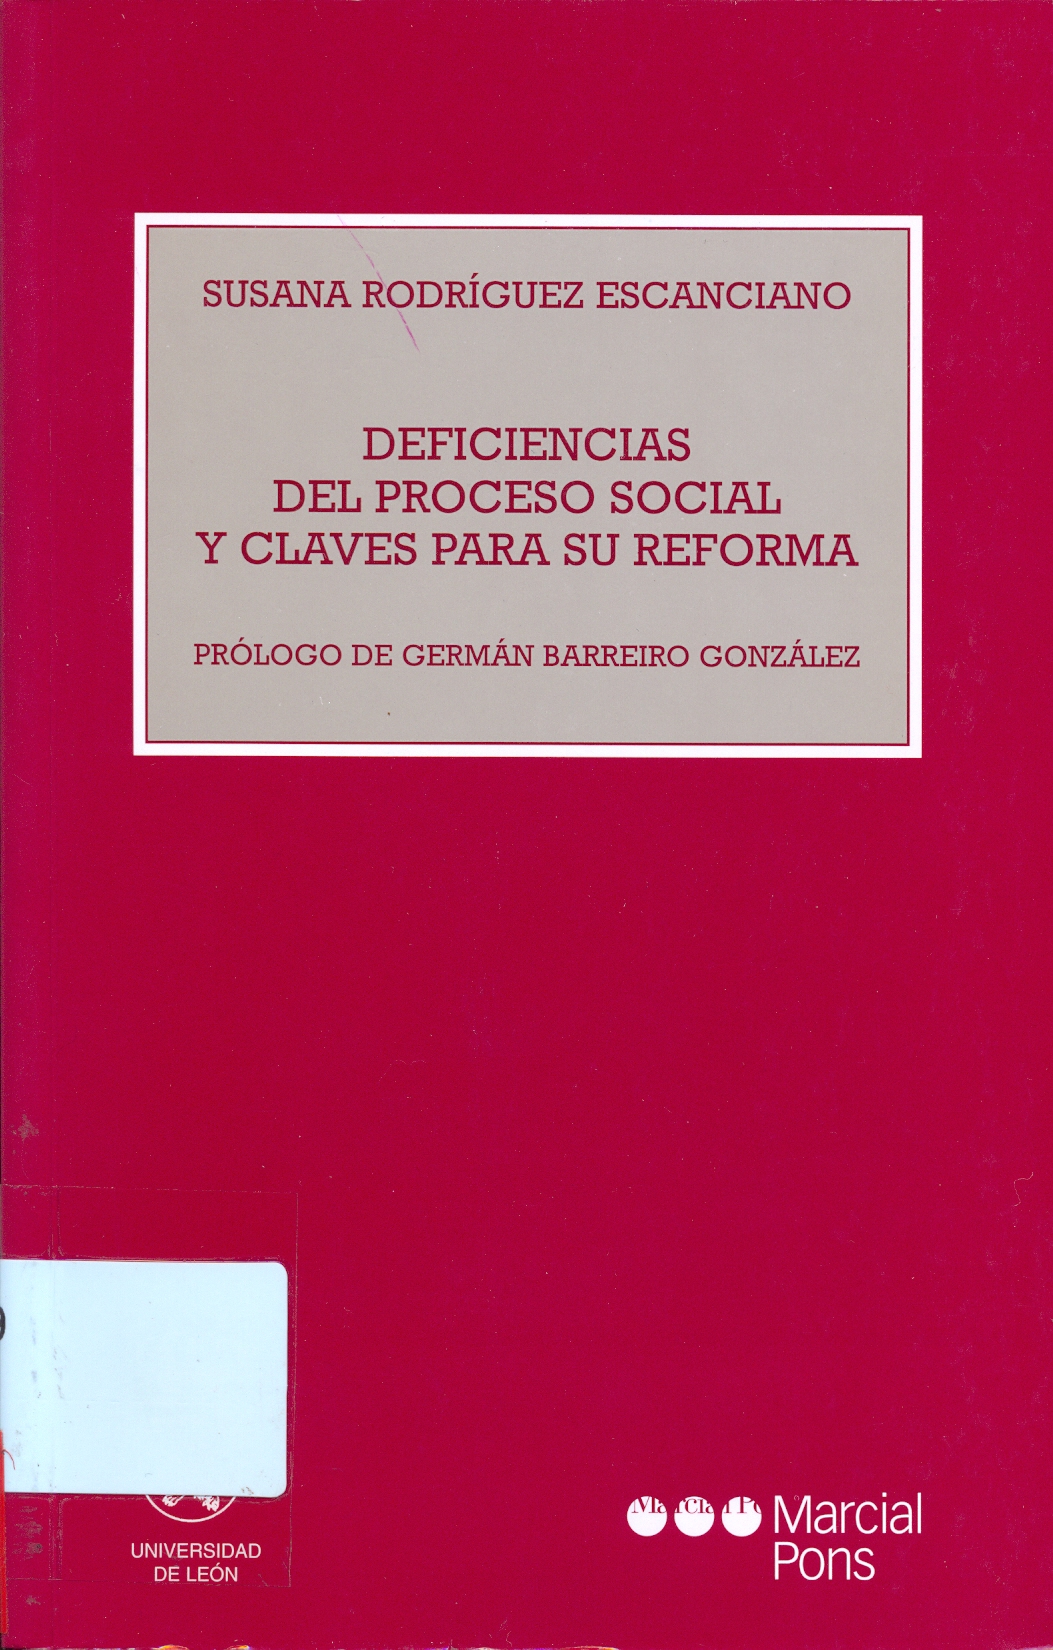 Imagen de portada del libro Deficiencias del proceso social y claves para su reforma